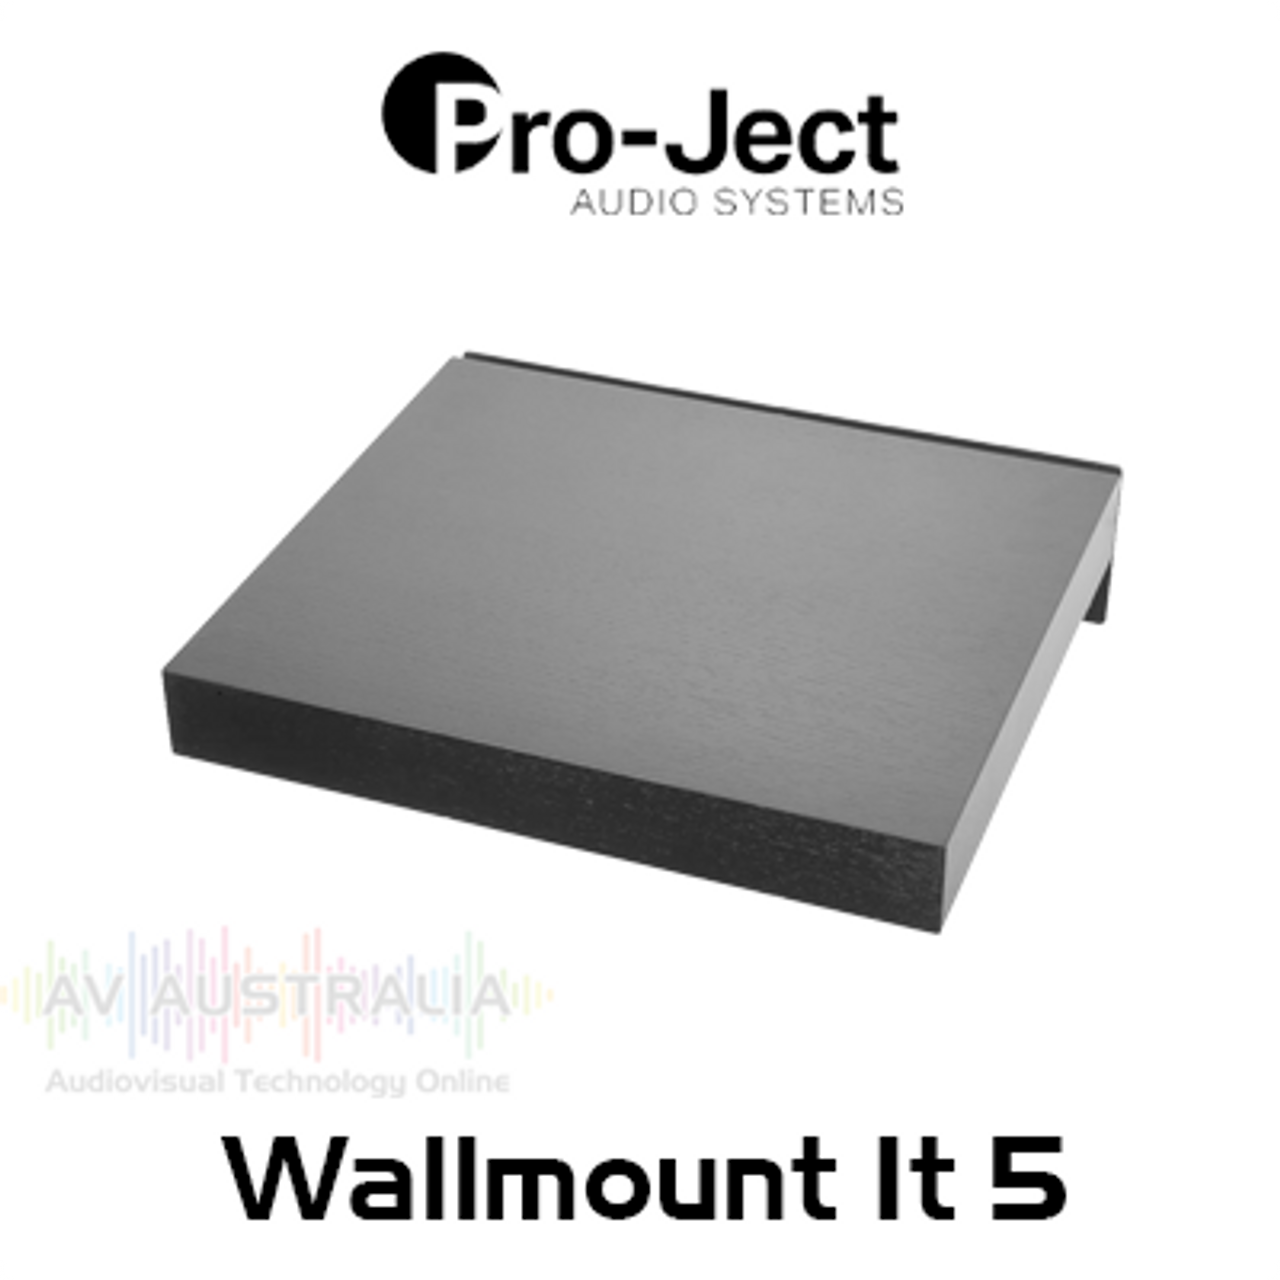 Pro-Ject WM5 Wallmount It 5 Turntable Wall Mount Shelf